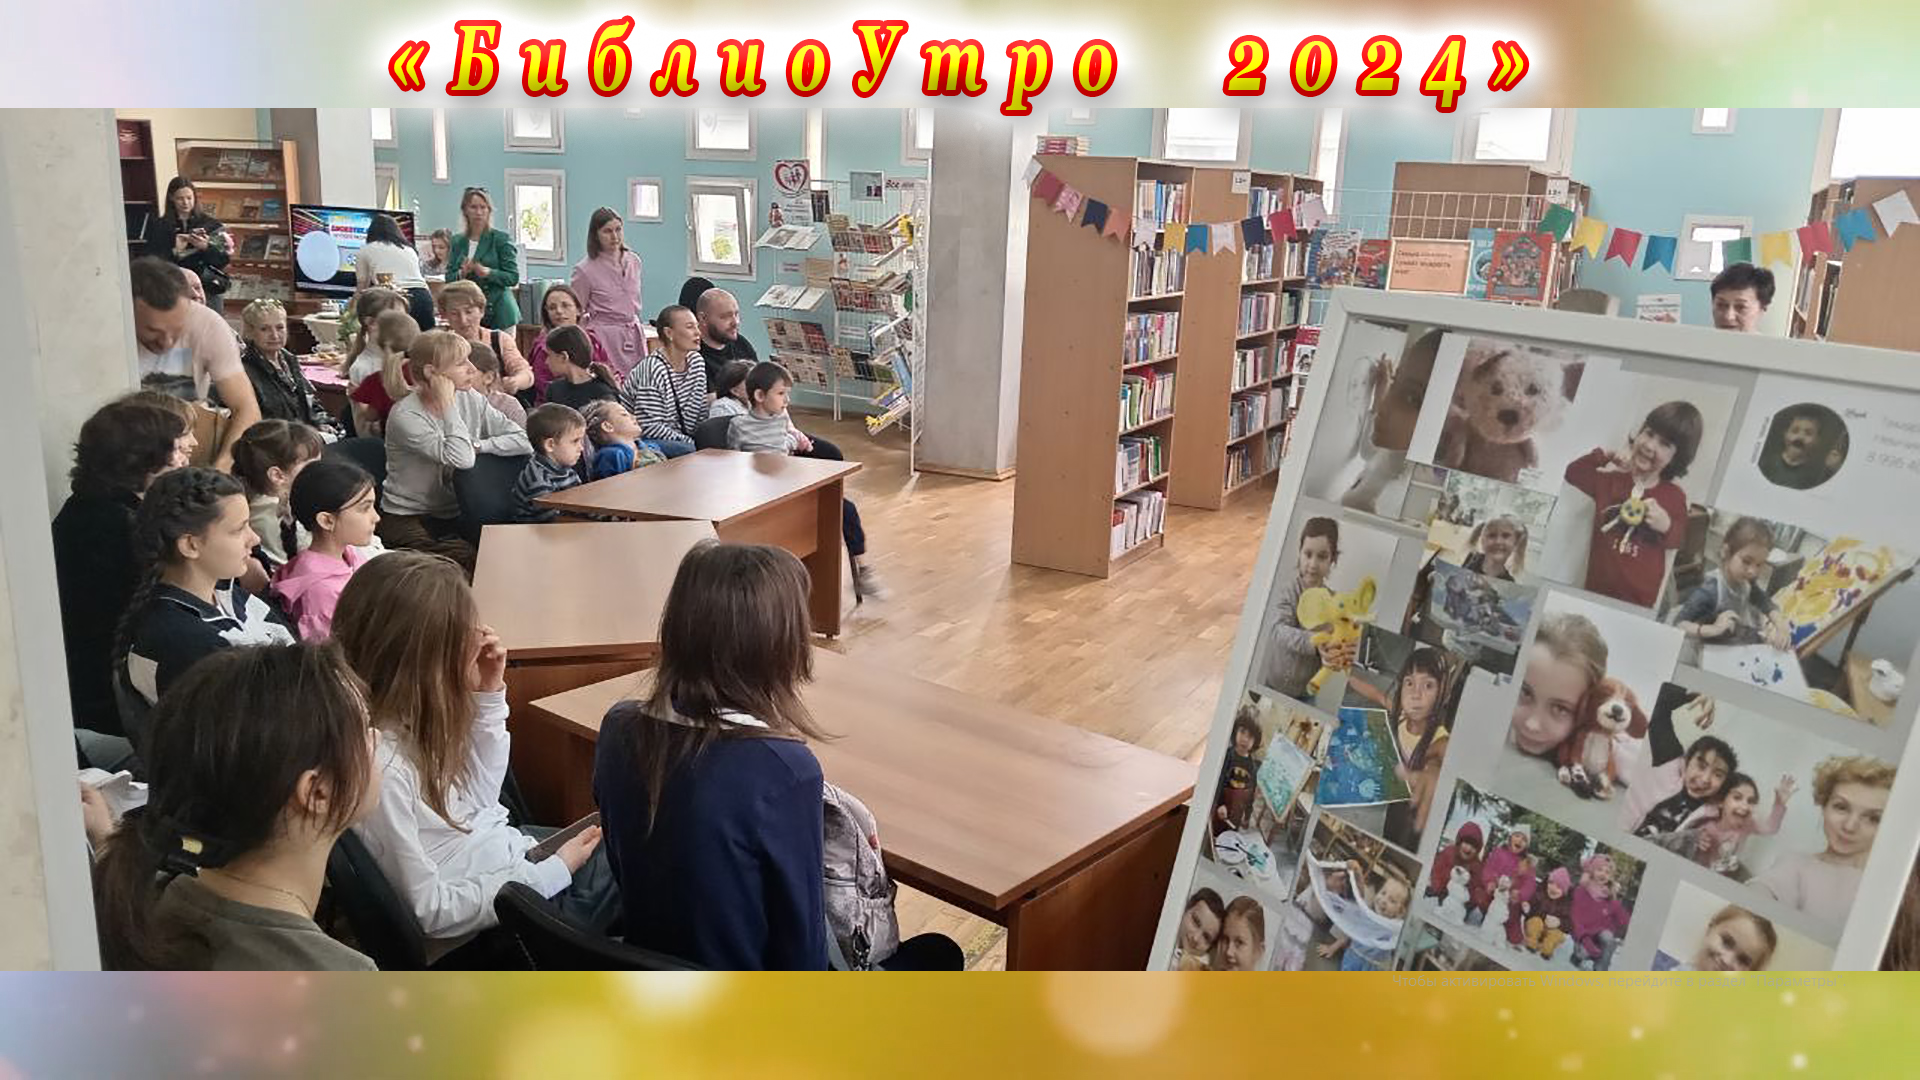 «БиблиоУтро 2024» в Центральной детской библиотеке имени Н. Островского города Сочи.